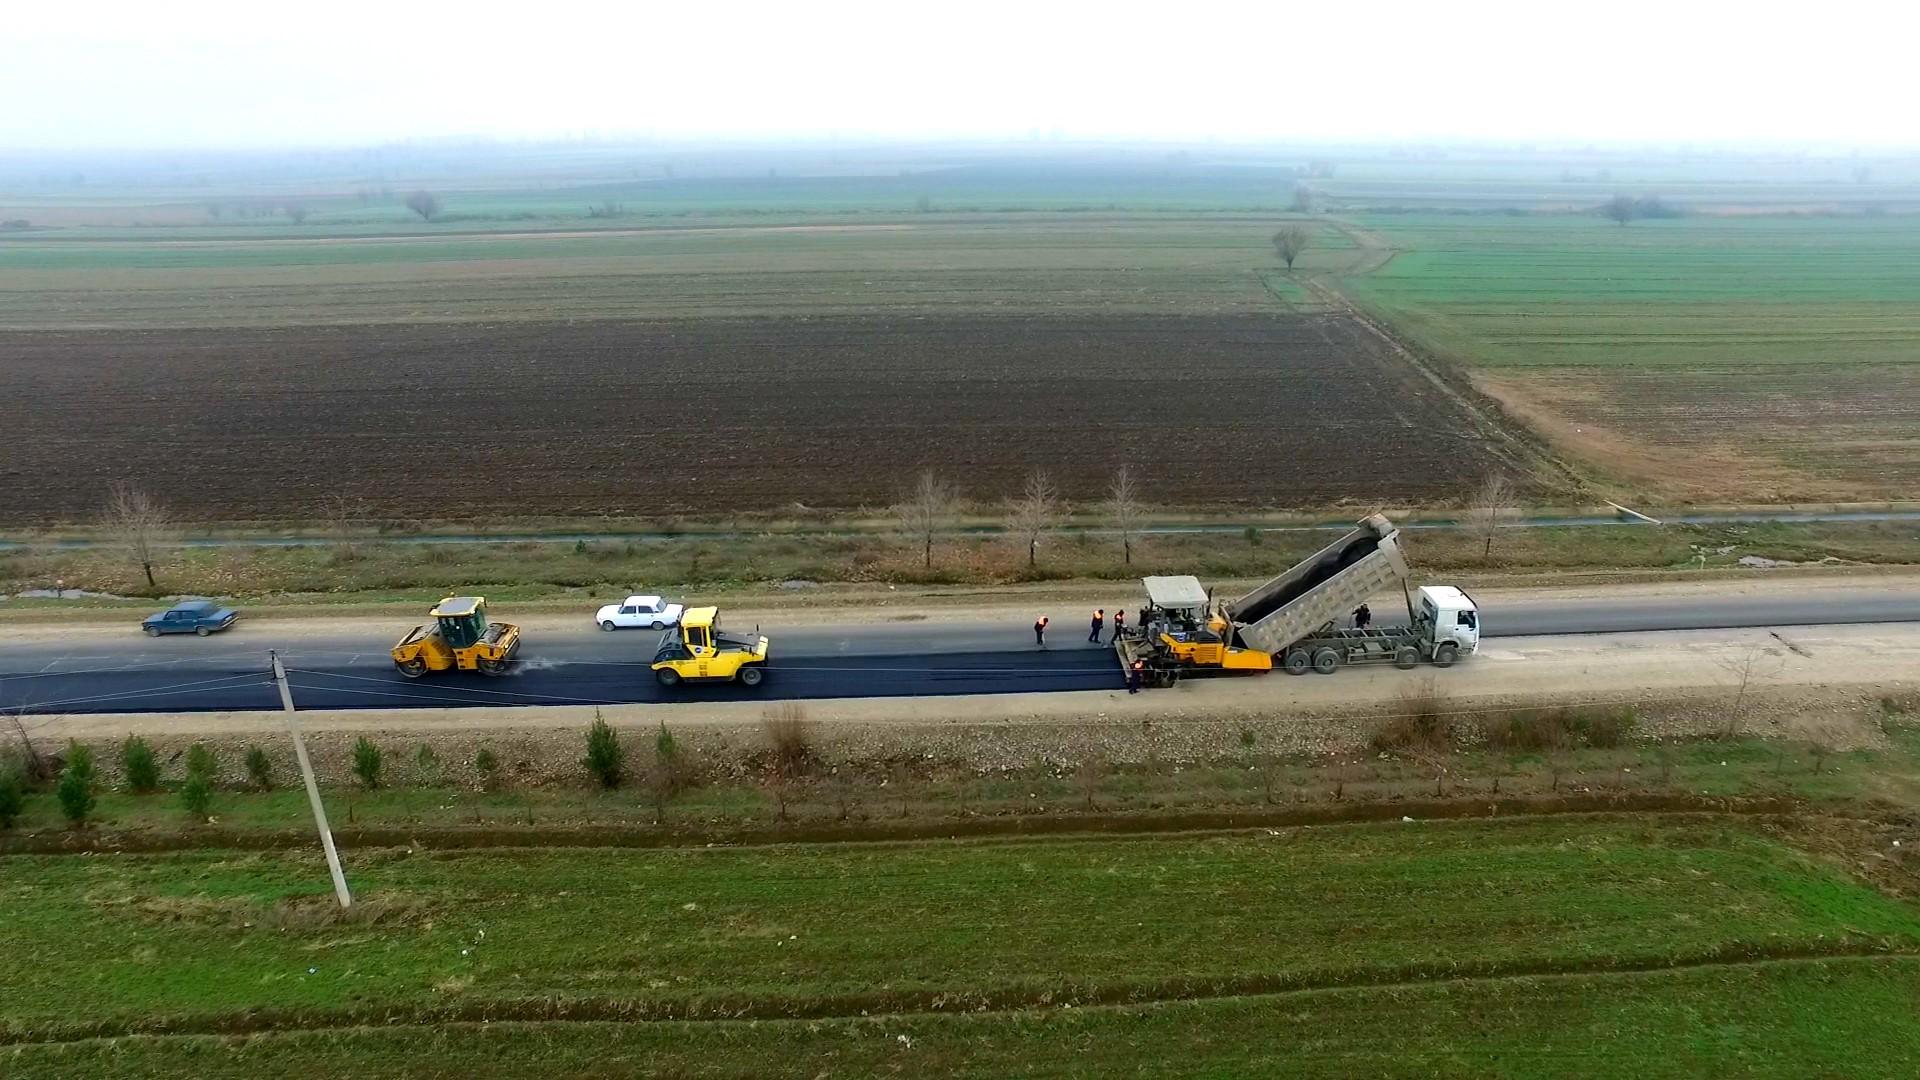 Tərtər-Hindarx avtomobil yolunun yenidən qurulması davam etdirilir (FOTO/VİDEO)